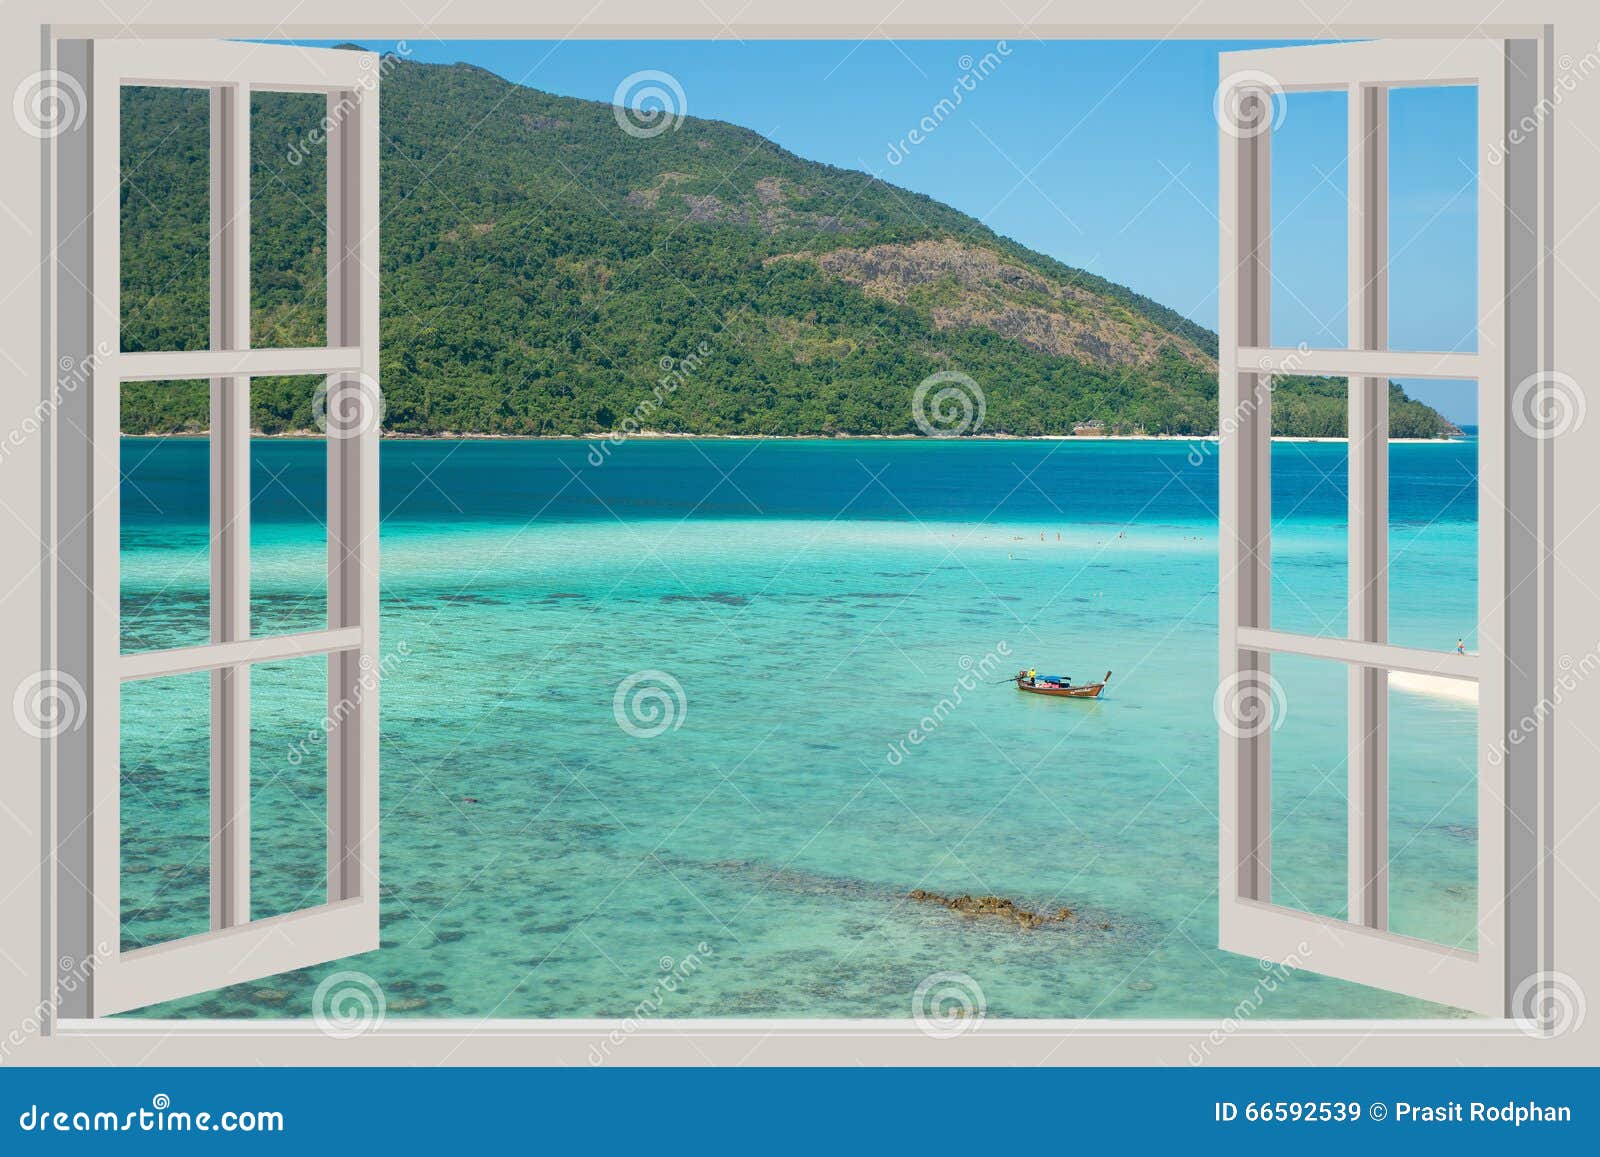 Das Offene Fenster Mit Seeansichten In Phuket Thailand Stockbild Bild Von Phuket Thailand